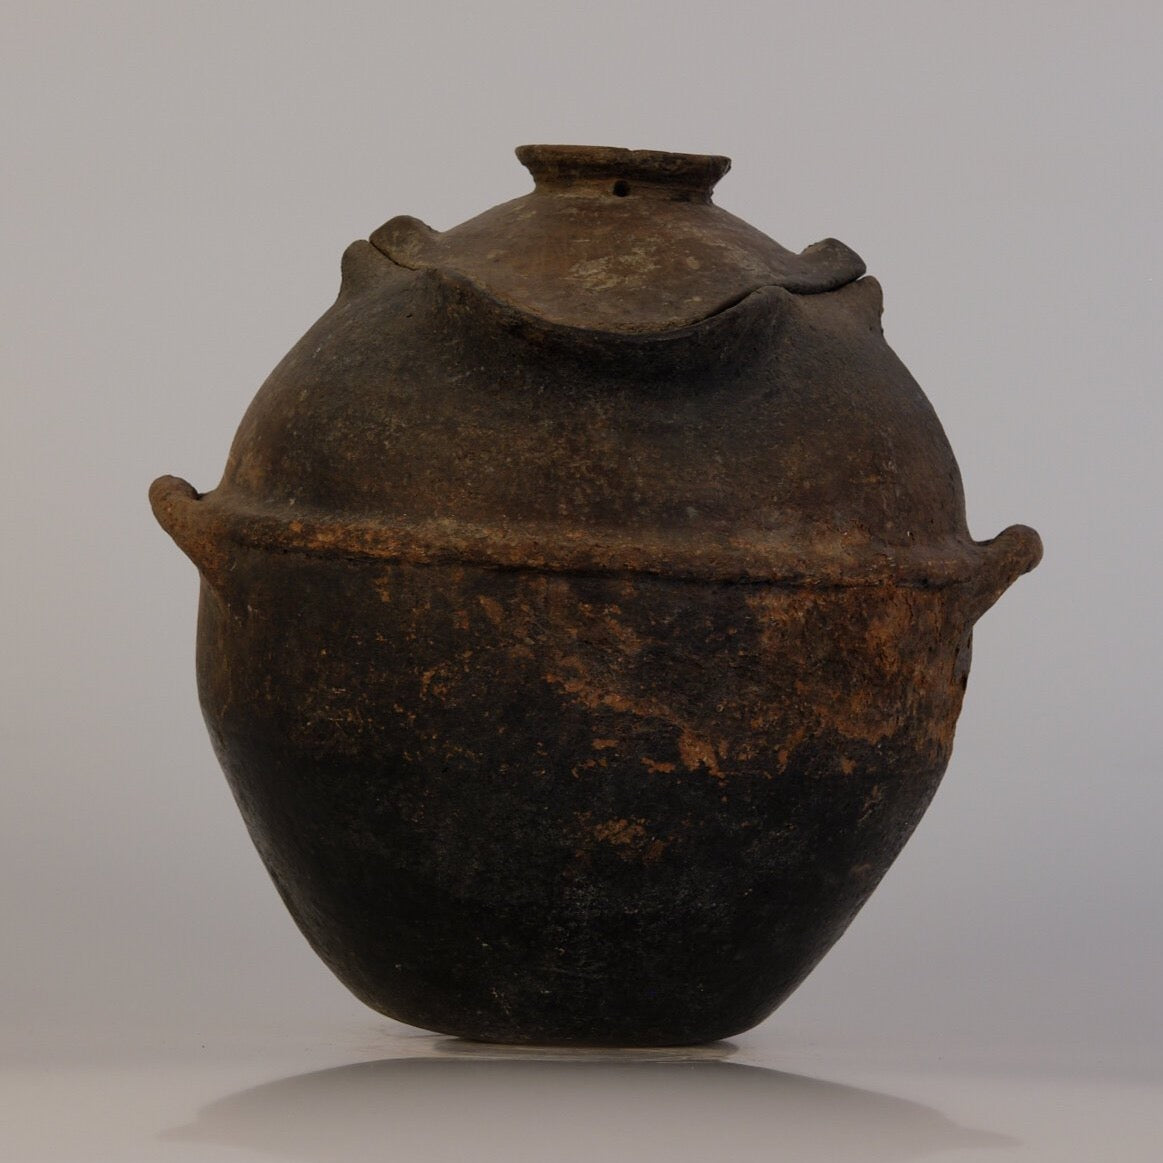 Tuareg ceramic container from North Africa